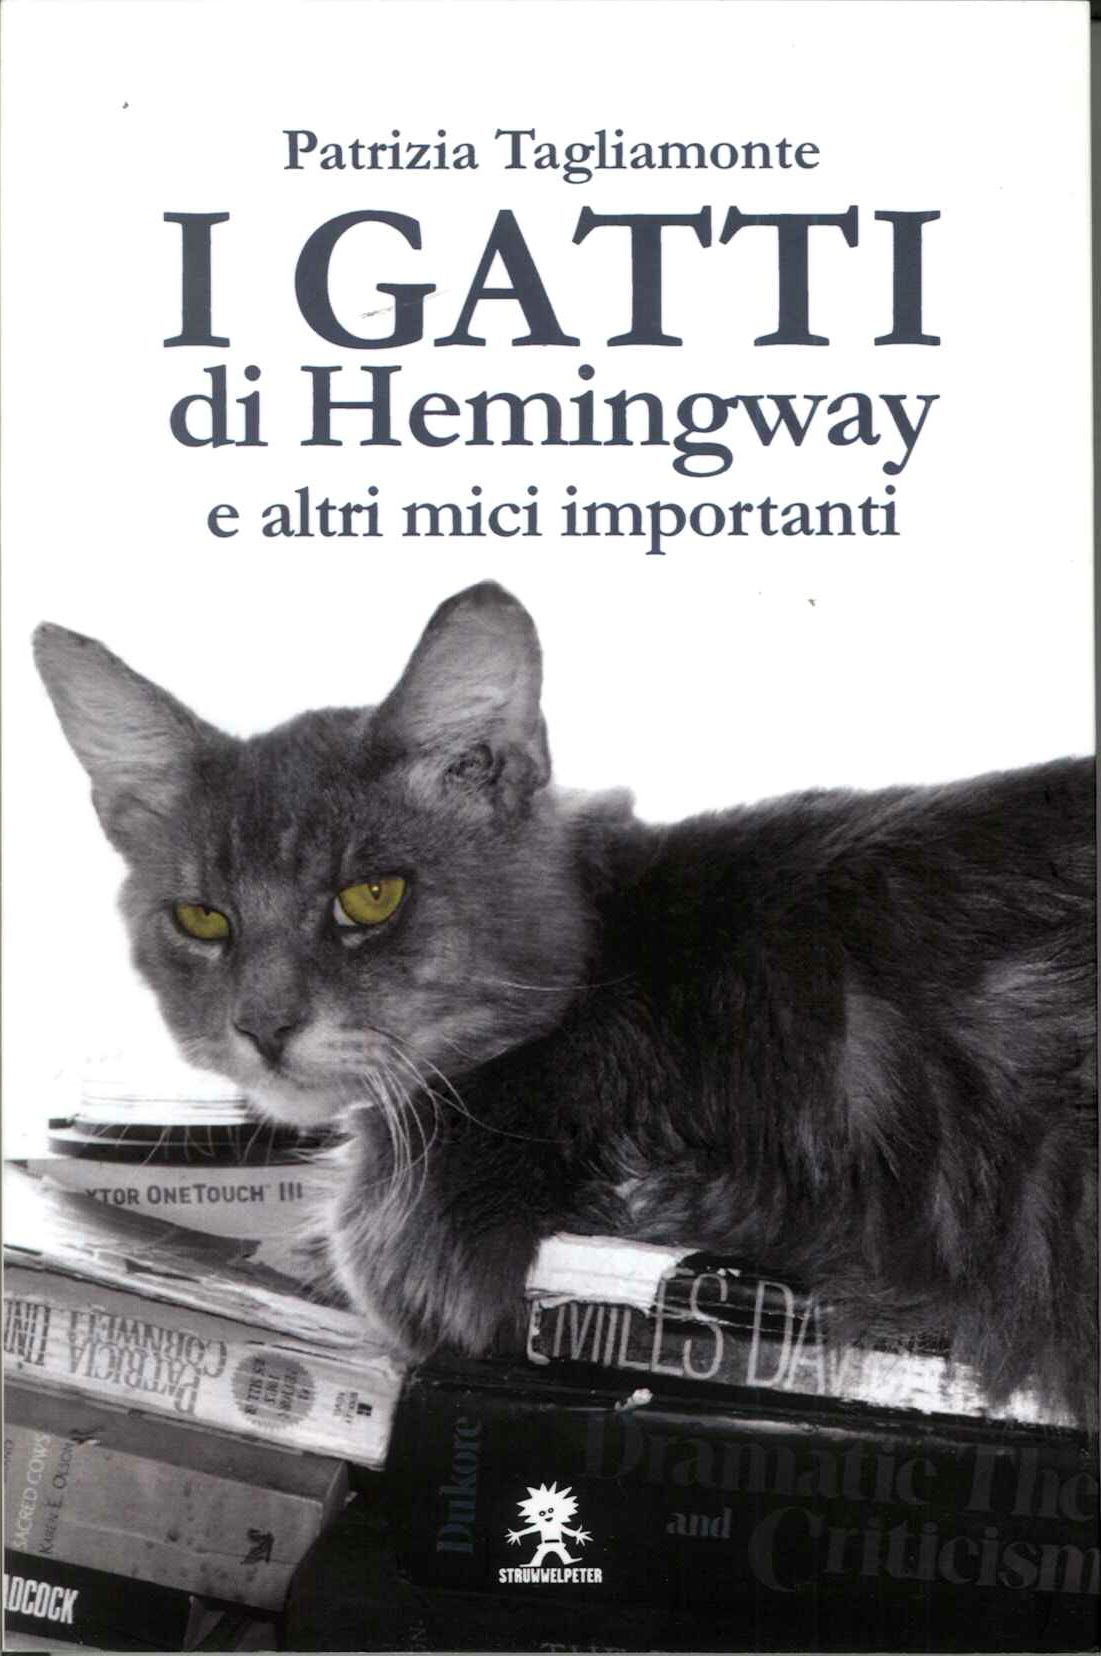 Gatti di Hemingway e altri amici importanti